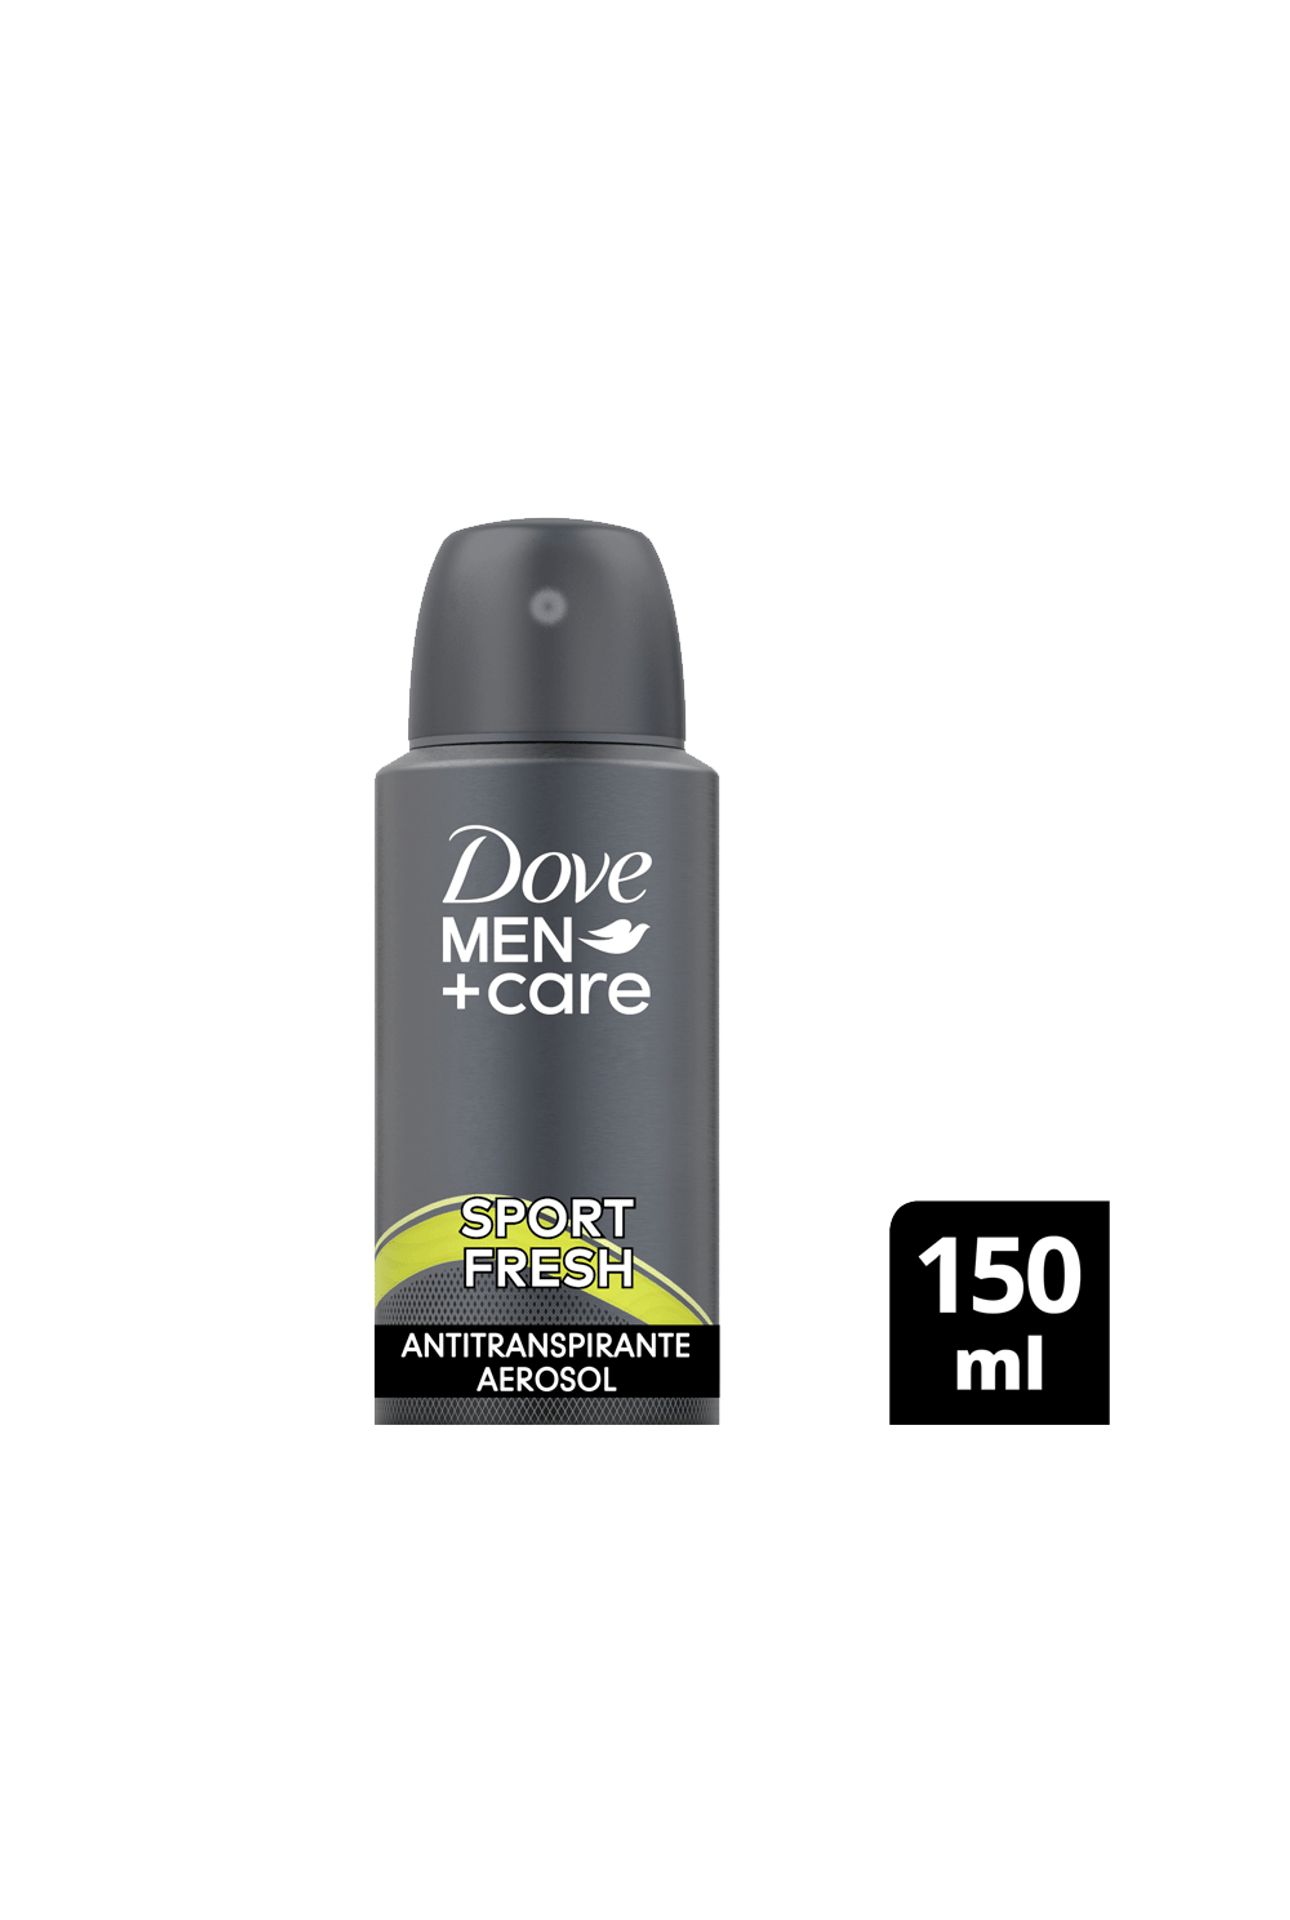 Dove-Antitranspirante-Dove-Men-Sport-x-150-ml-7791293048024_img1